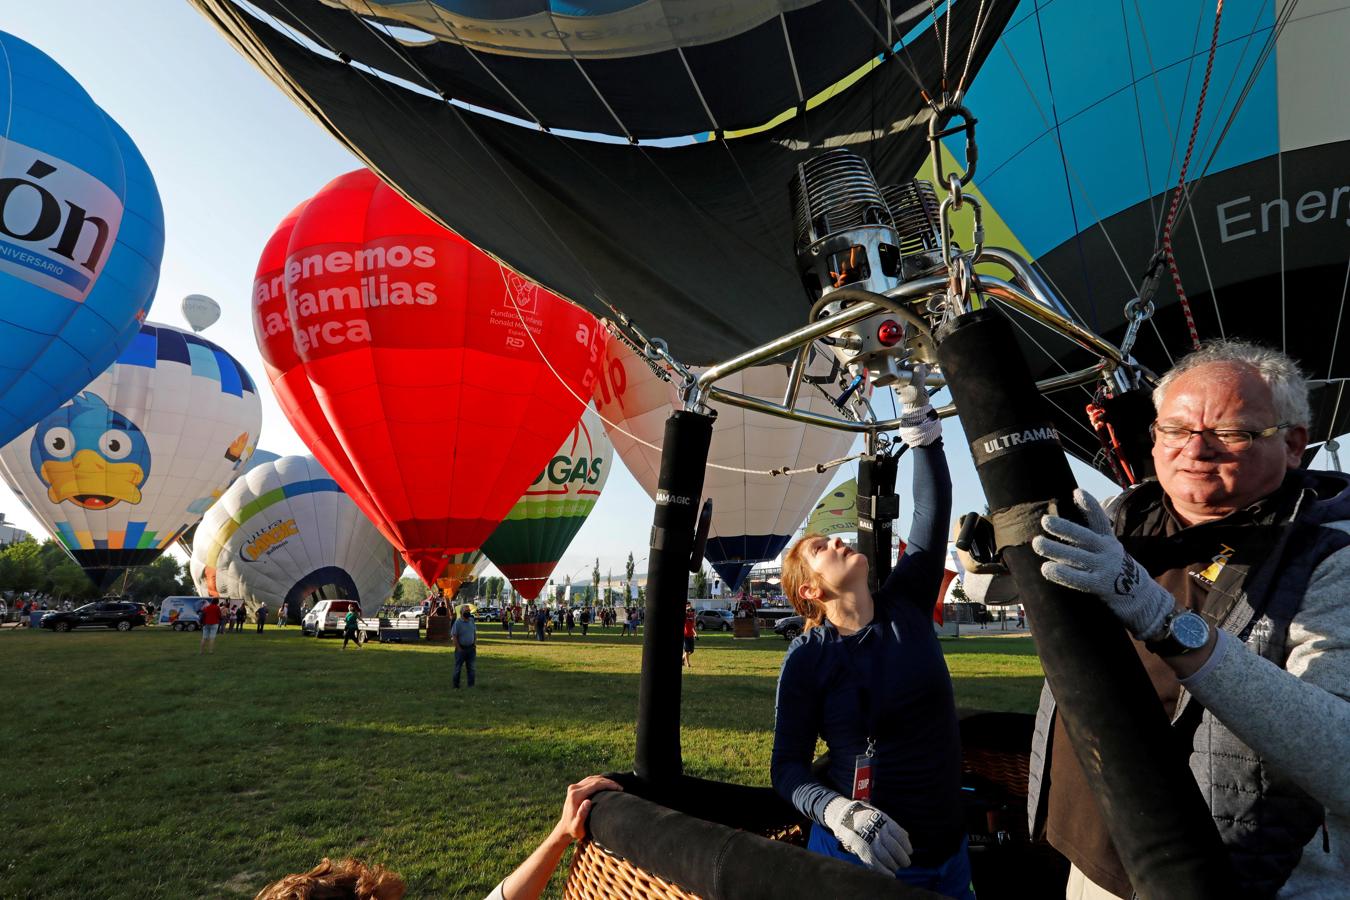 Los últimos detalles. Este año, debido a la situación sanitaria, el European Balloon Festival se celebrará en formato reducido y con los aforos limitados